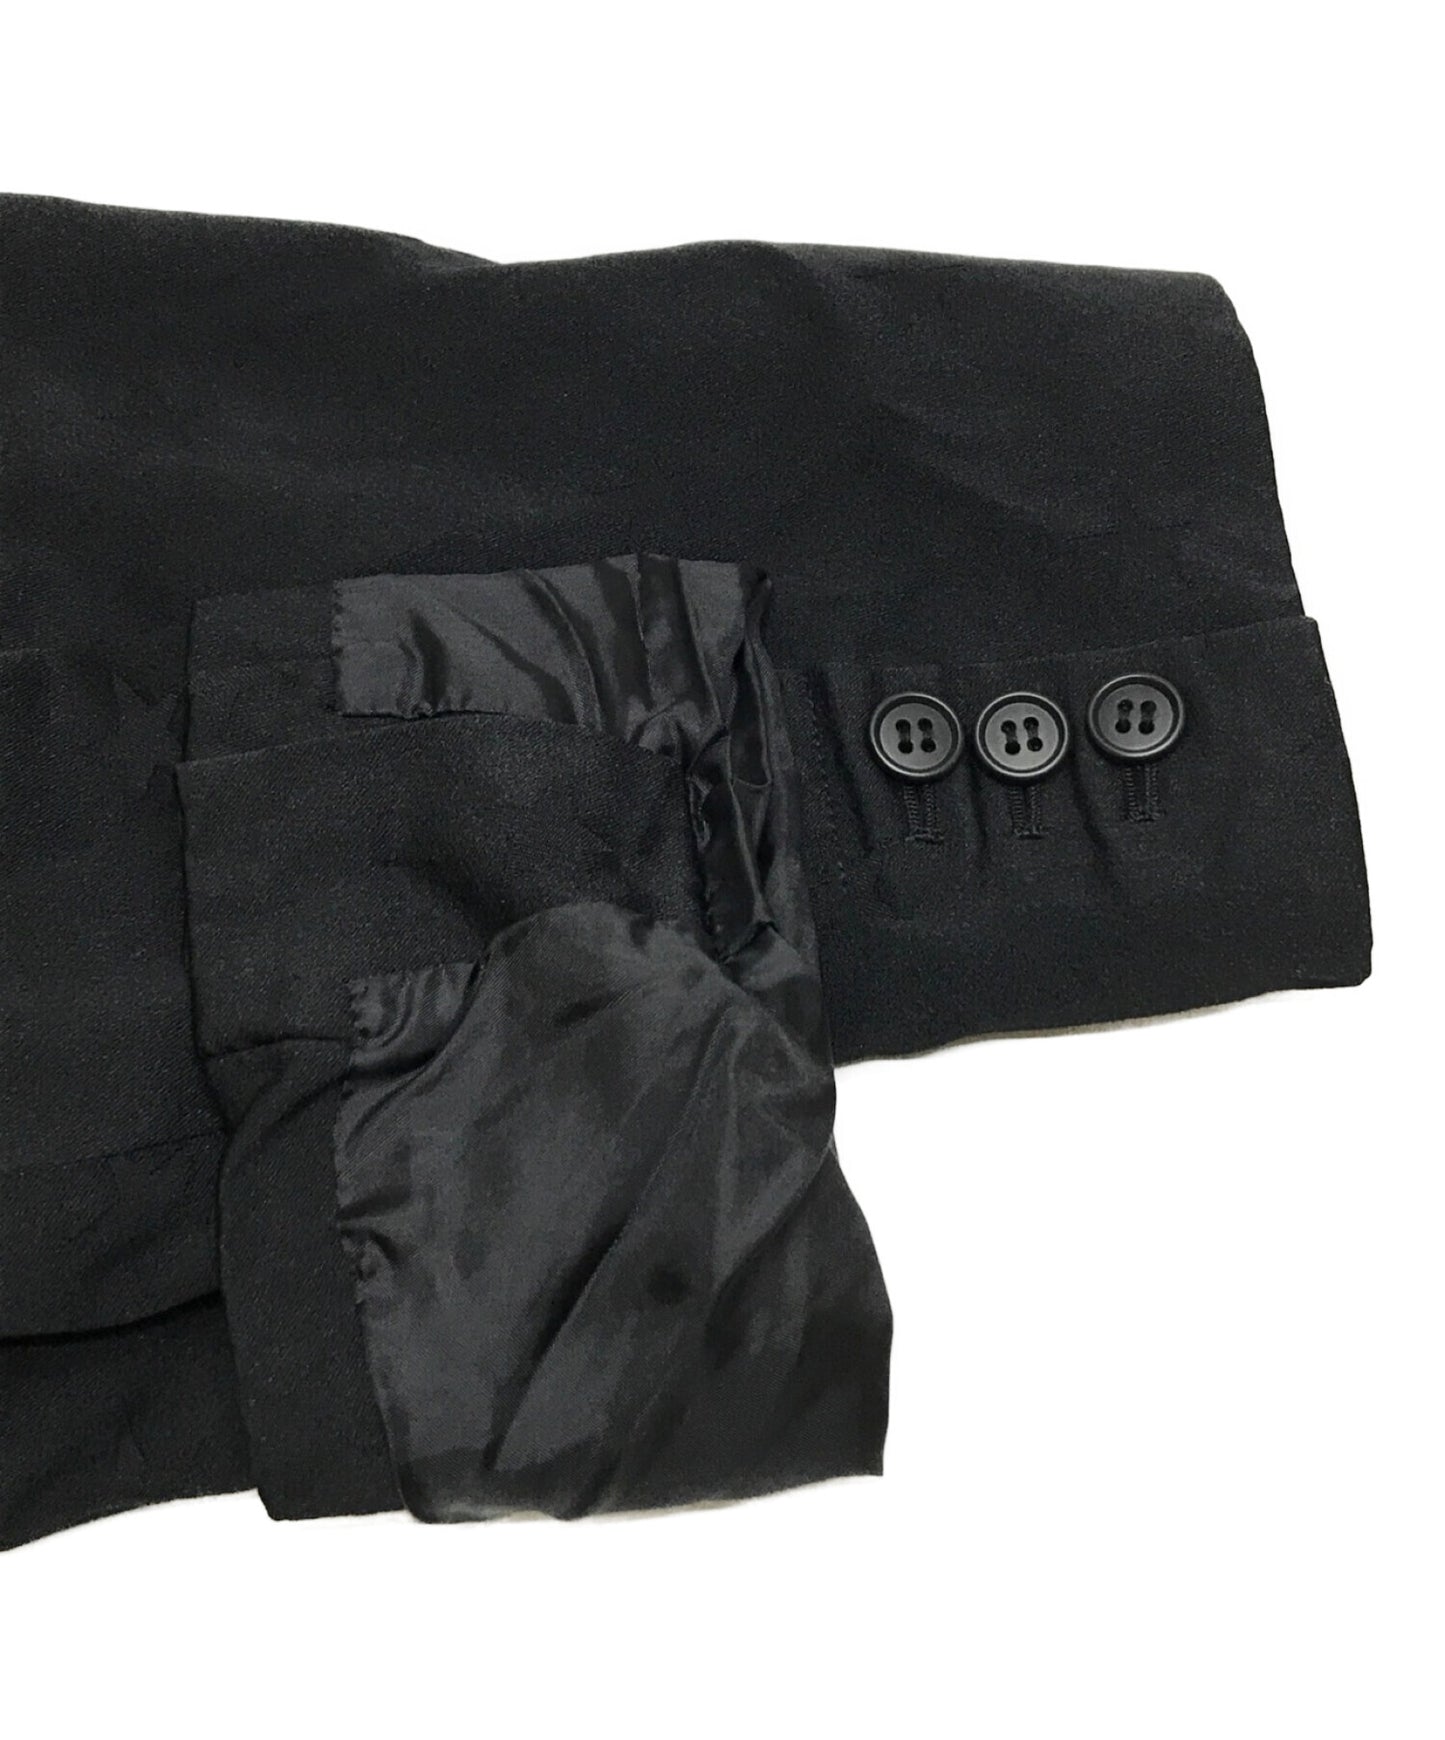 Black Comme des Garcons Poly Shrunken Star 3b Jacket Long 1q-J016